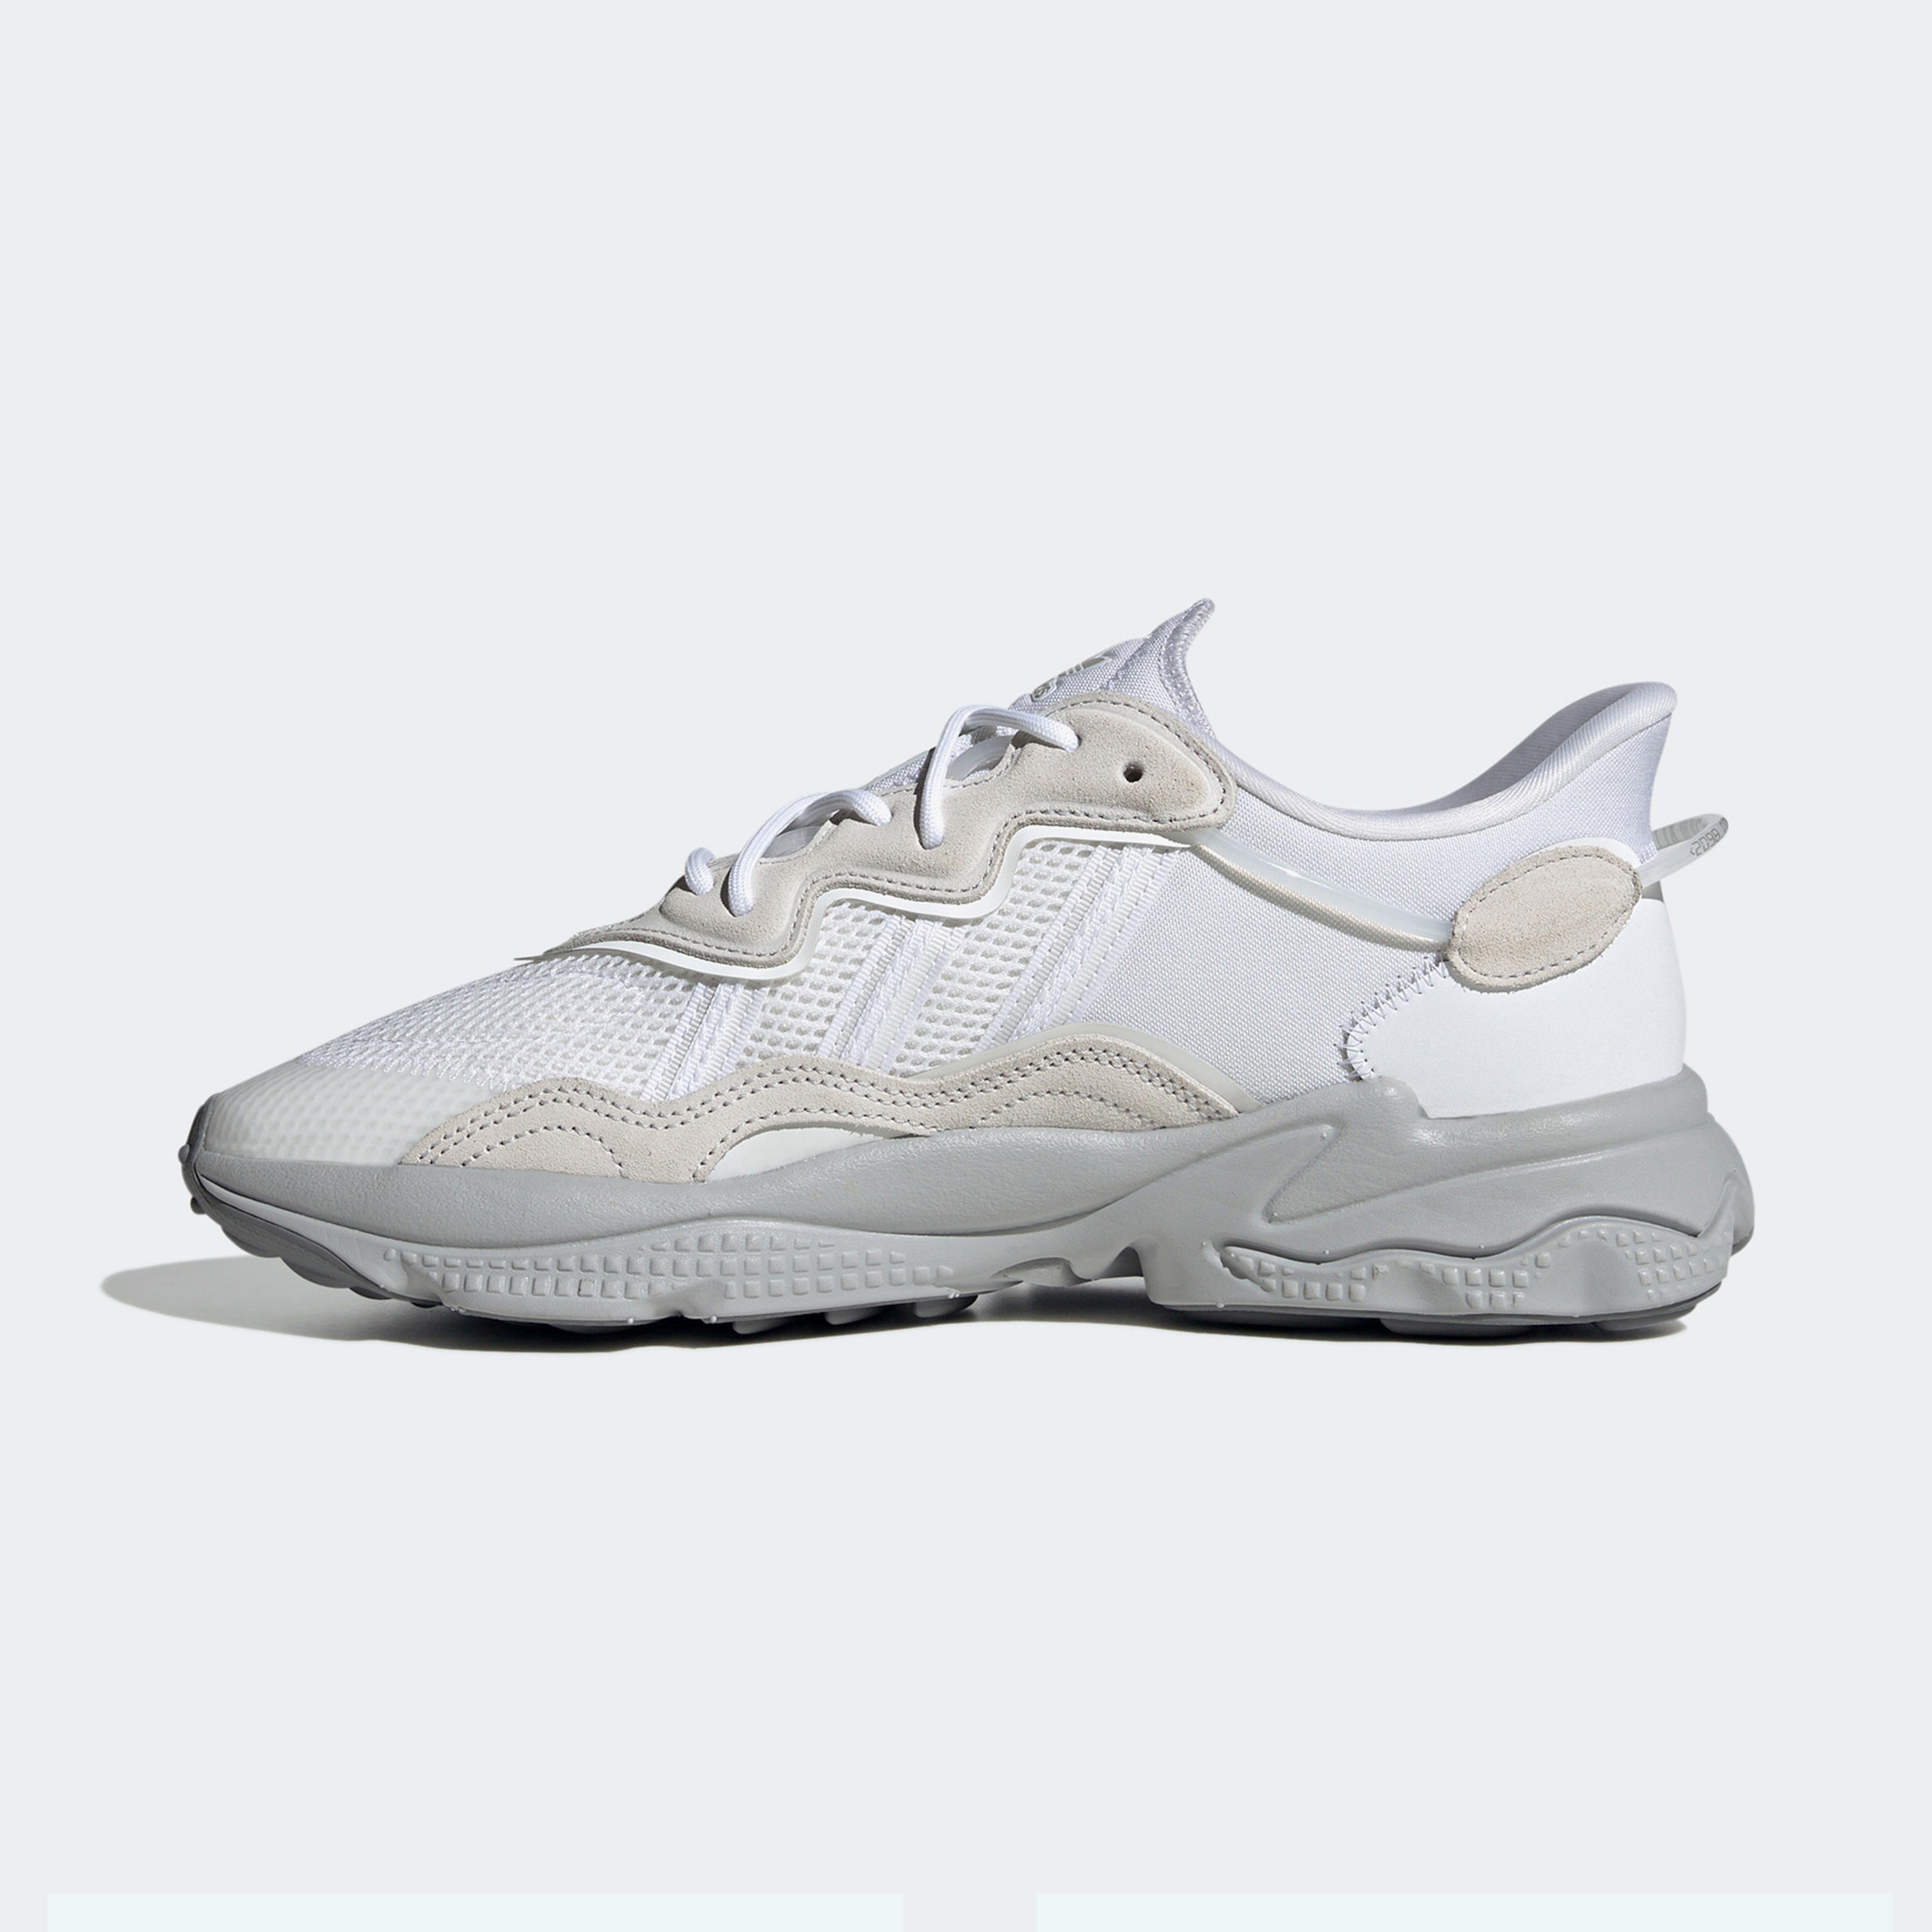 adidas Ozweego  Unisex Beyaz Spor Ayakkabı